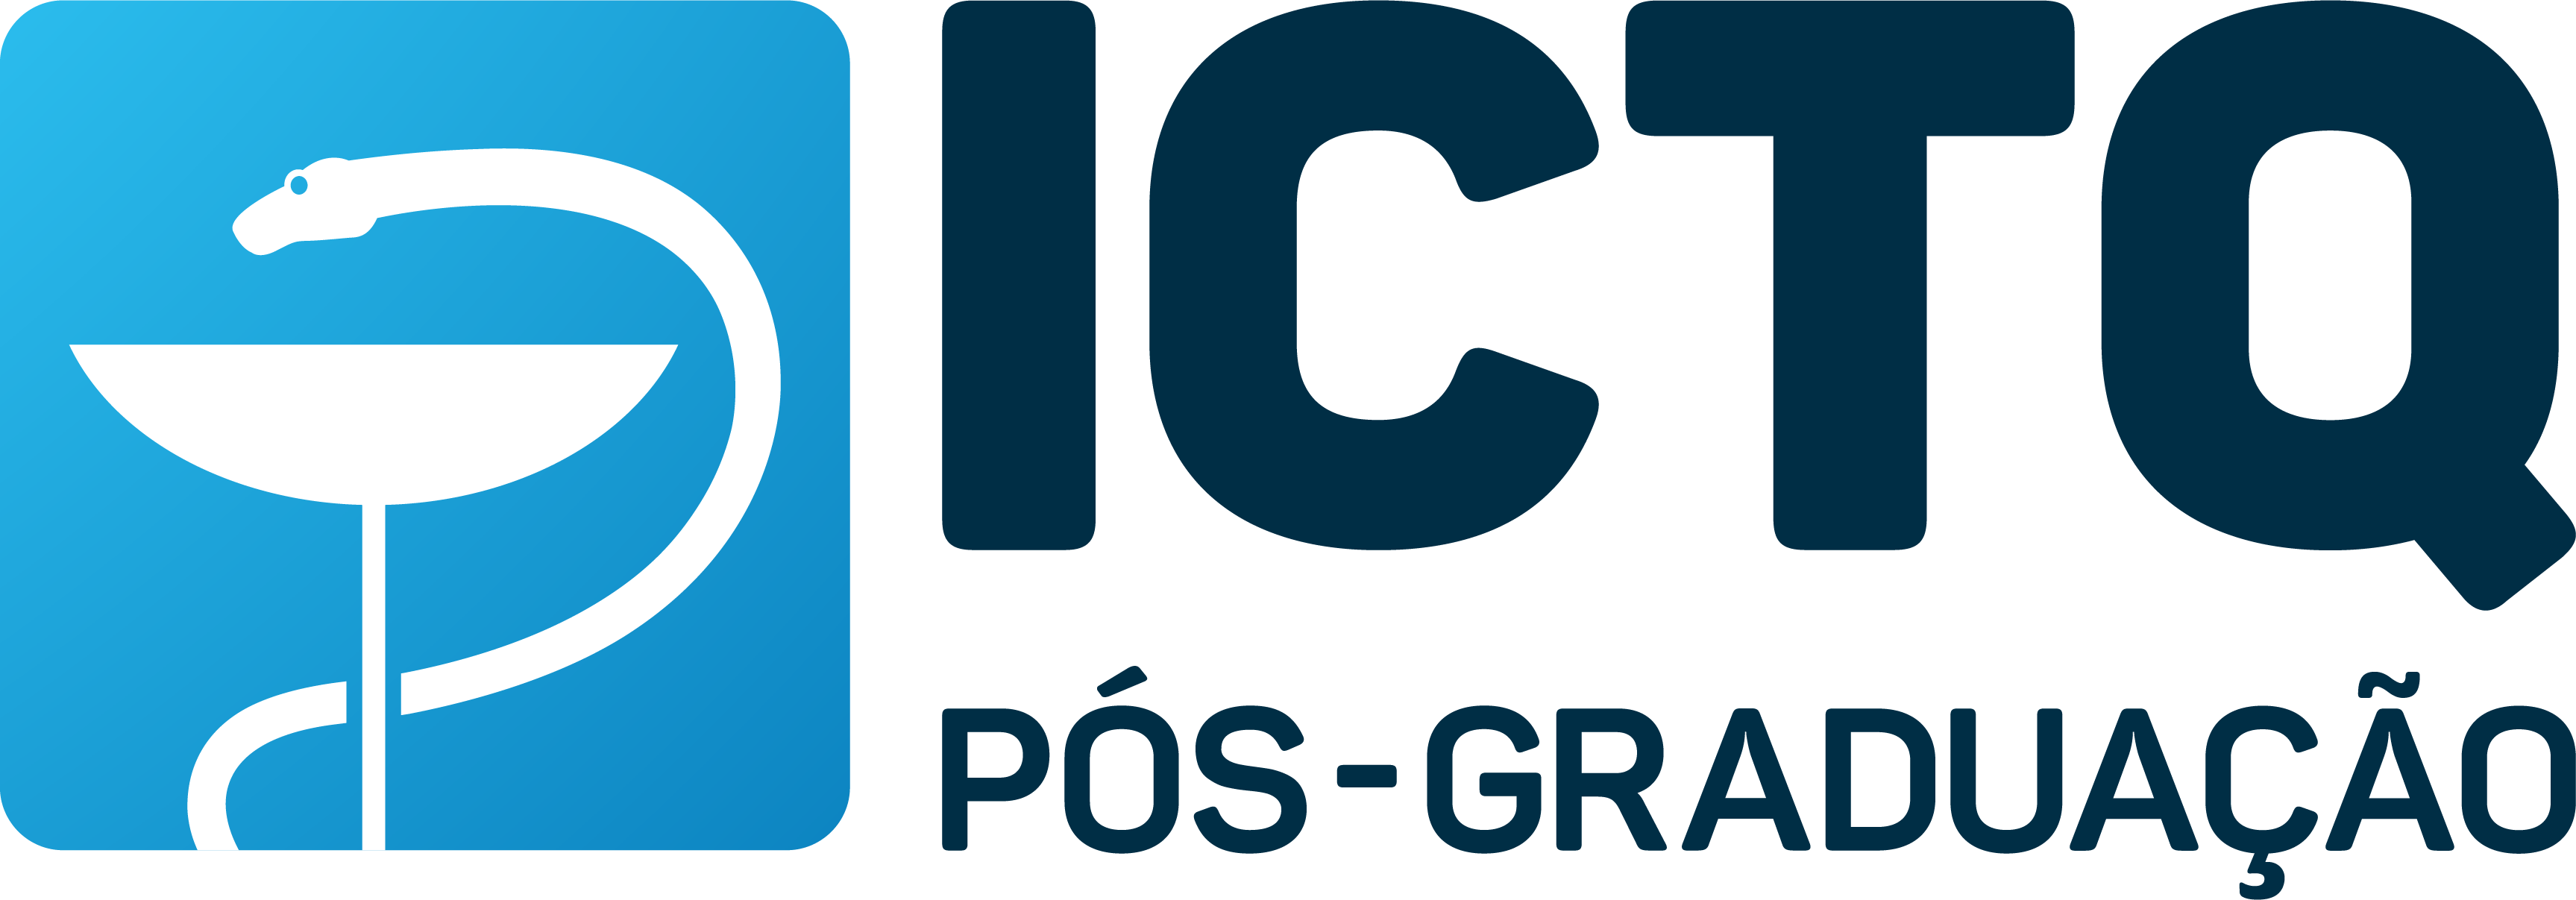 O ICTQ - Instituto de Ciência, Tecnologia e Qualidade é uma entidade de iniciativa privada